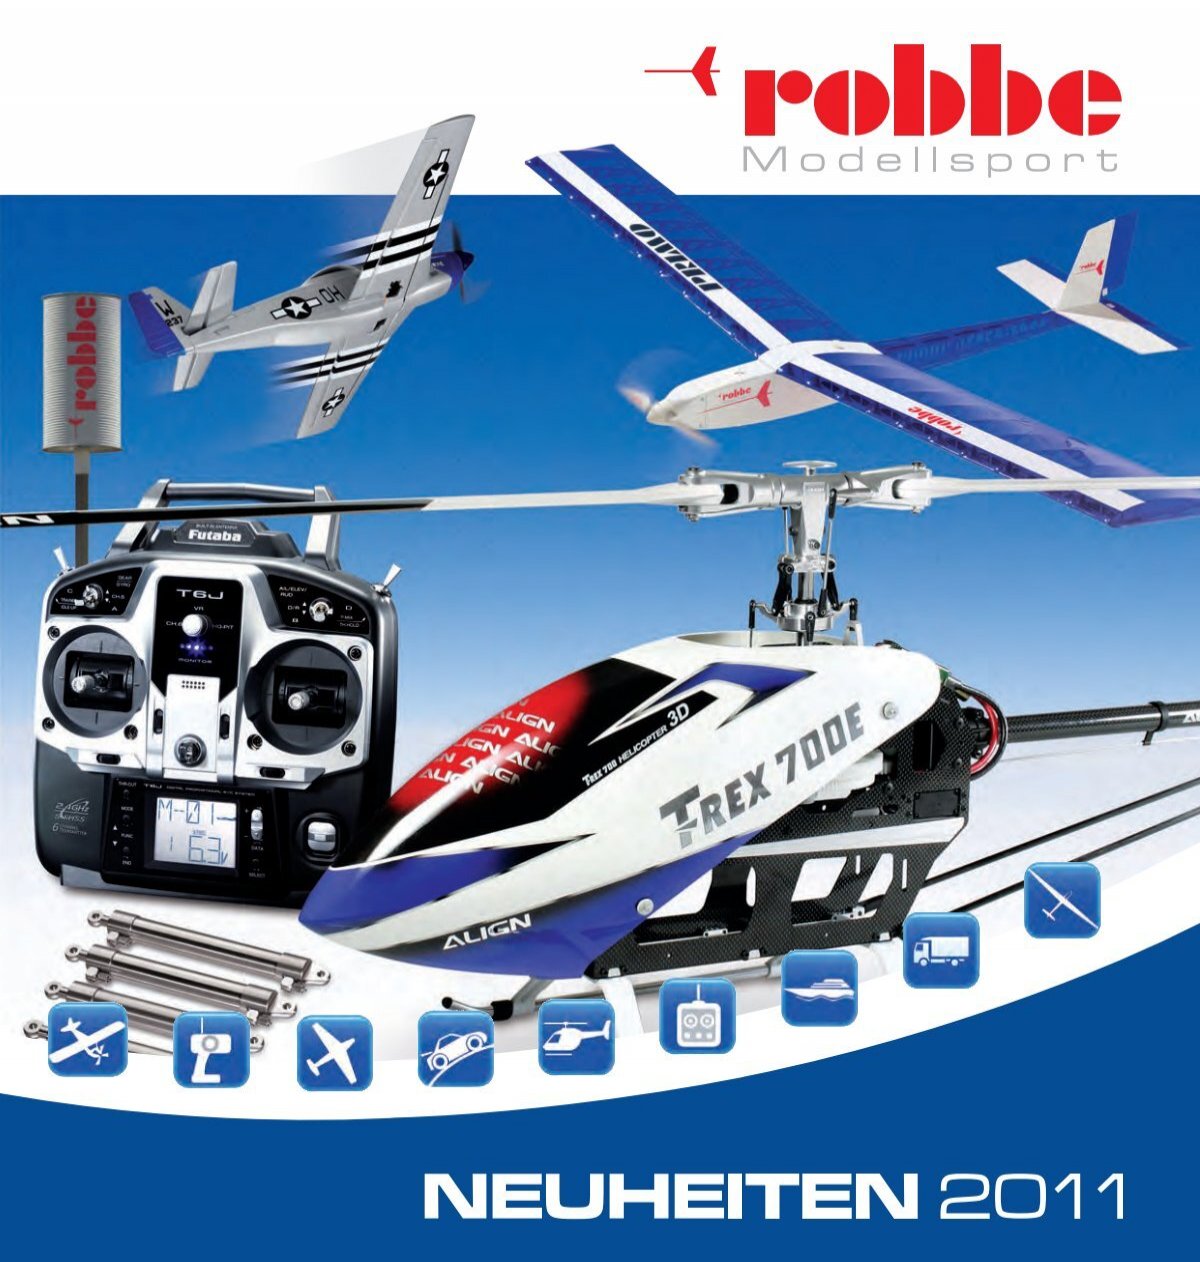 Neuheiten 2011 Deutsch - Robbe